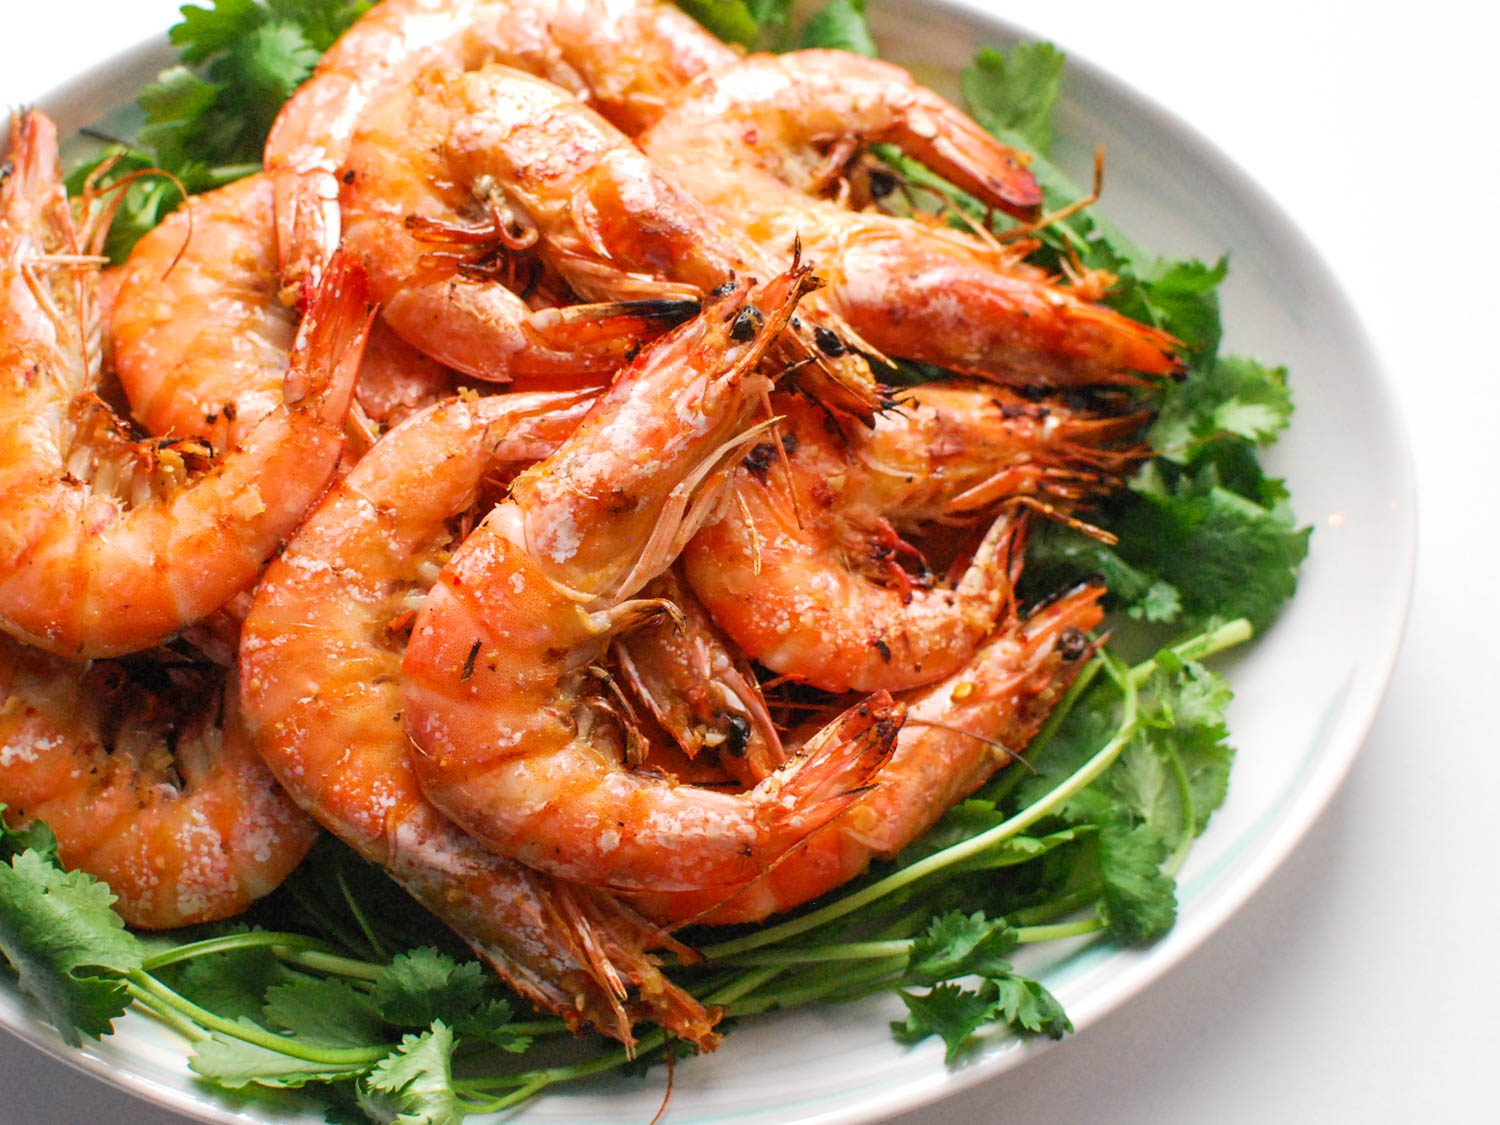 176 133058 shrimp outstanding health benefits 2 فوائد مذهلة للجمبري.. تعزيز الصحة الجنسية للرجال وتقوية العظام